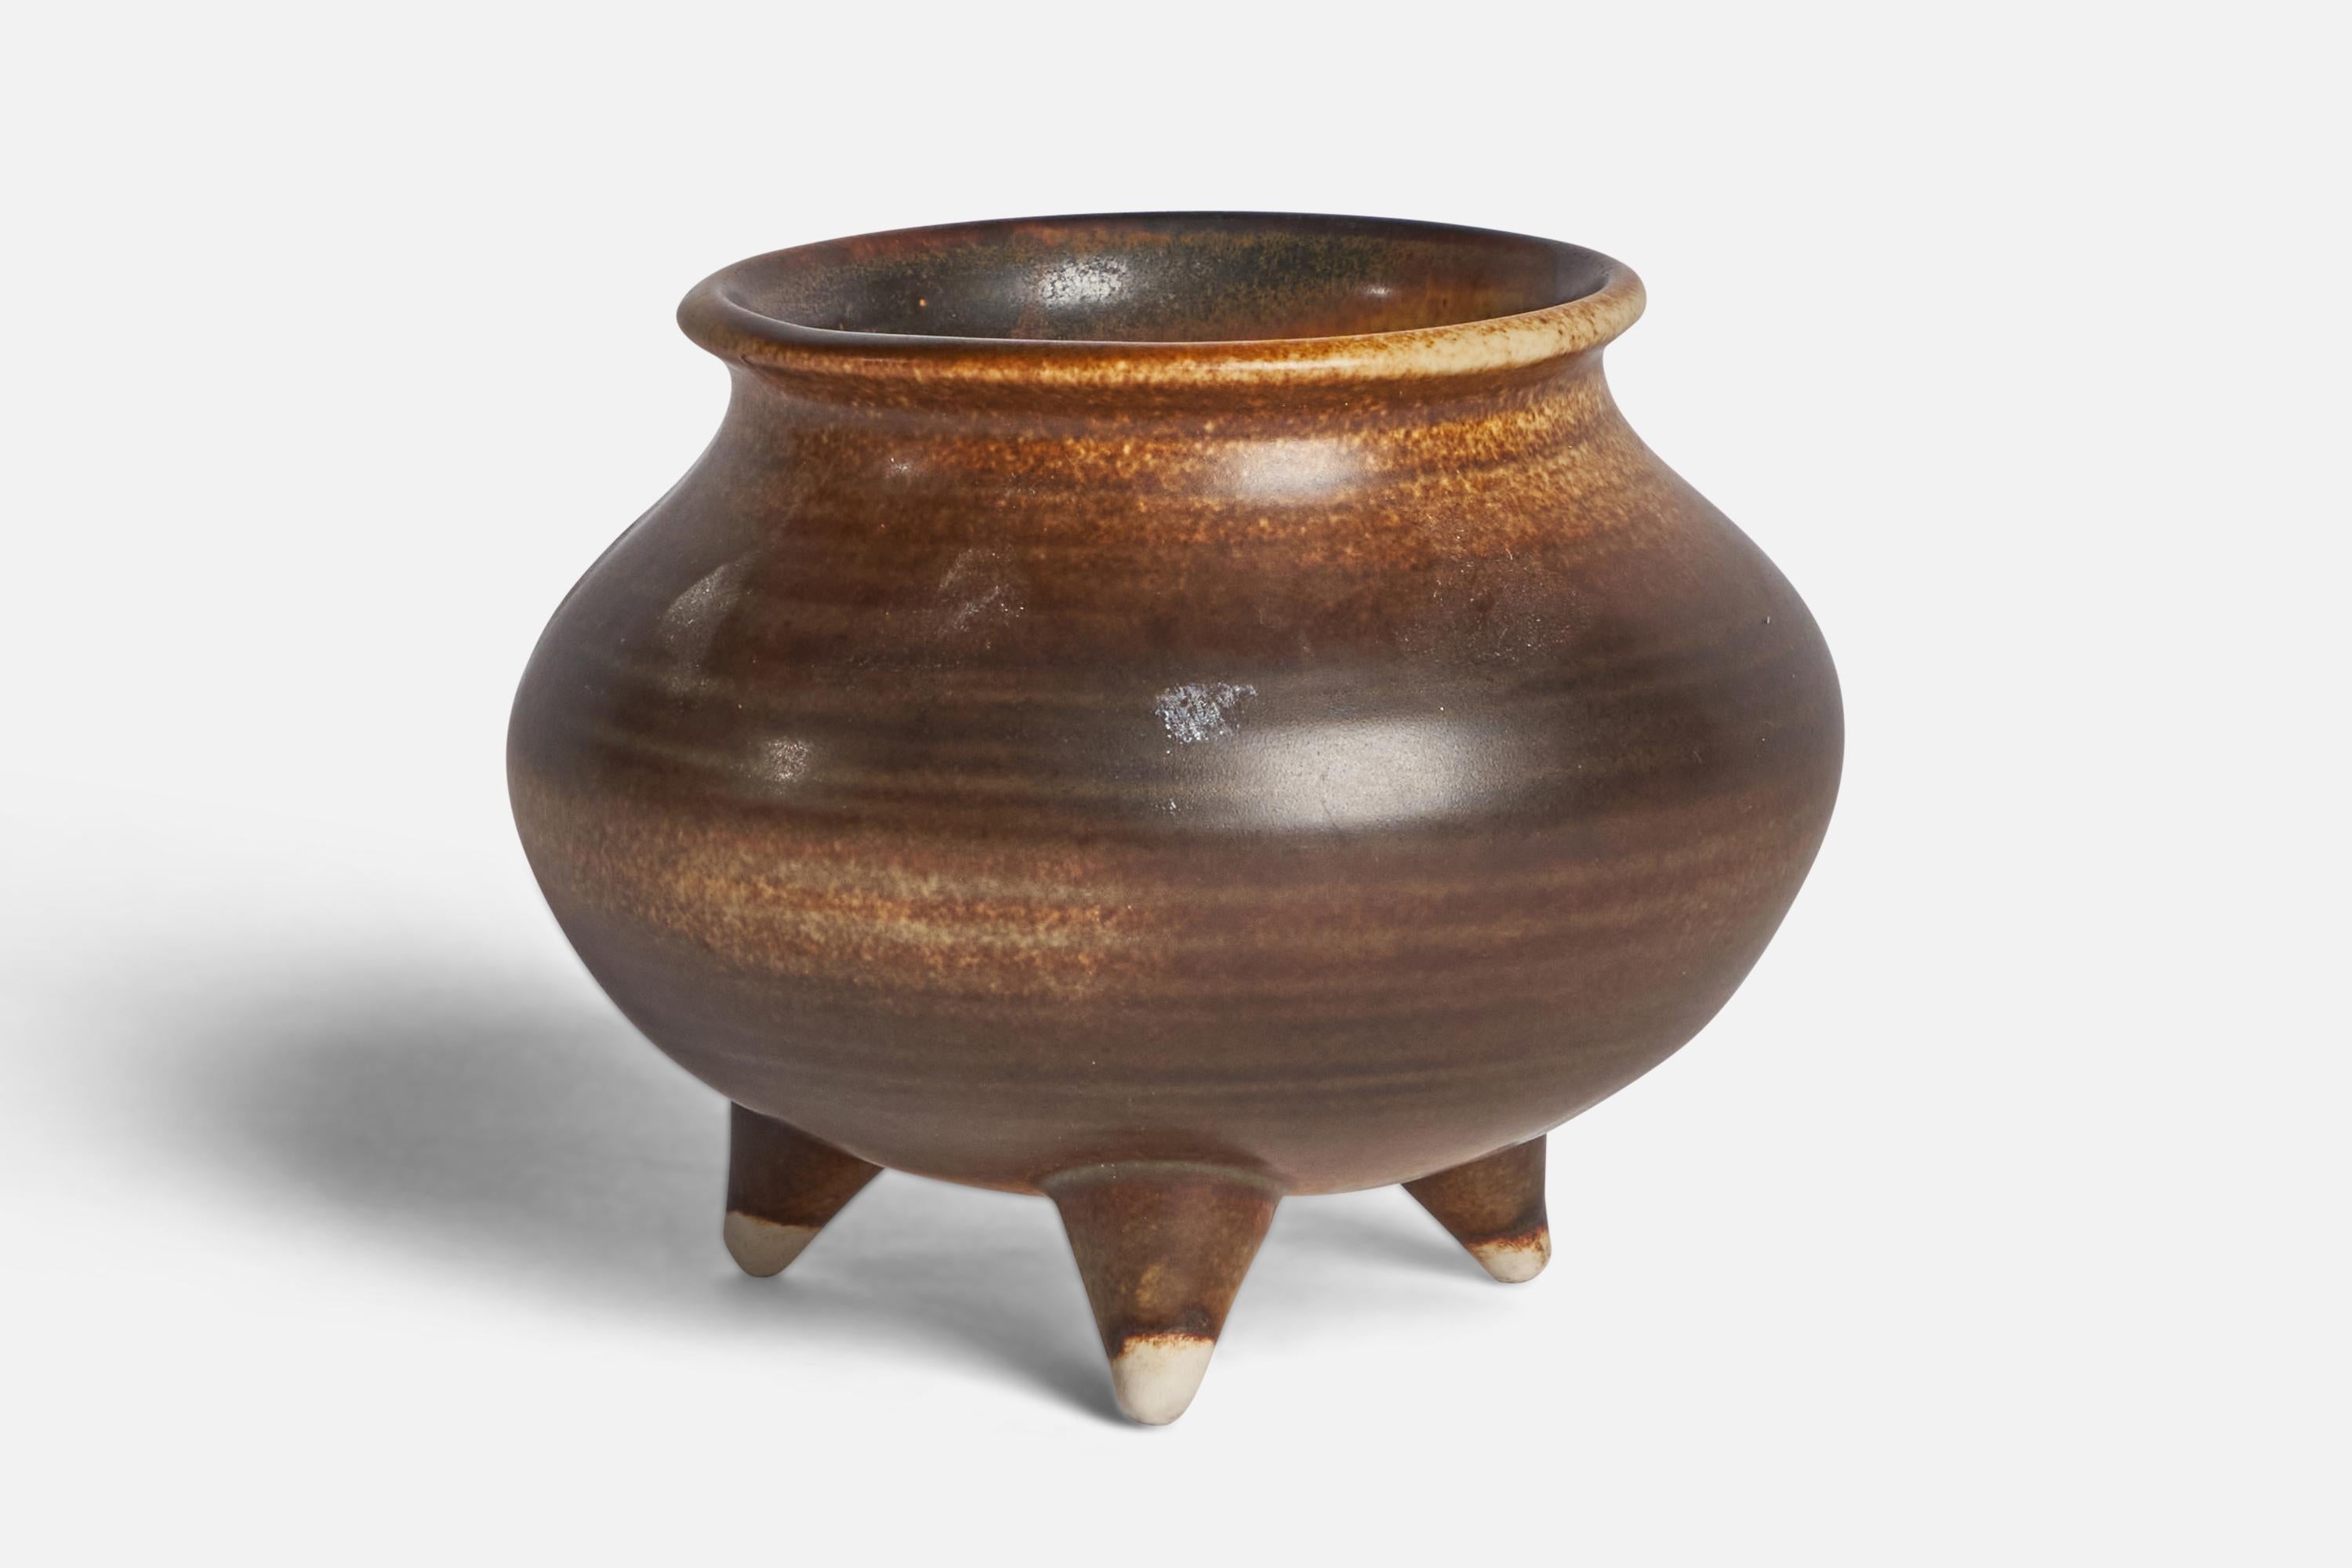 Un petit vase émaillé brun-beige conçu par Brita Heilimo et produit par Arabia, Finlande, vers les années 1950.